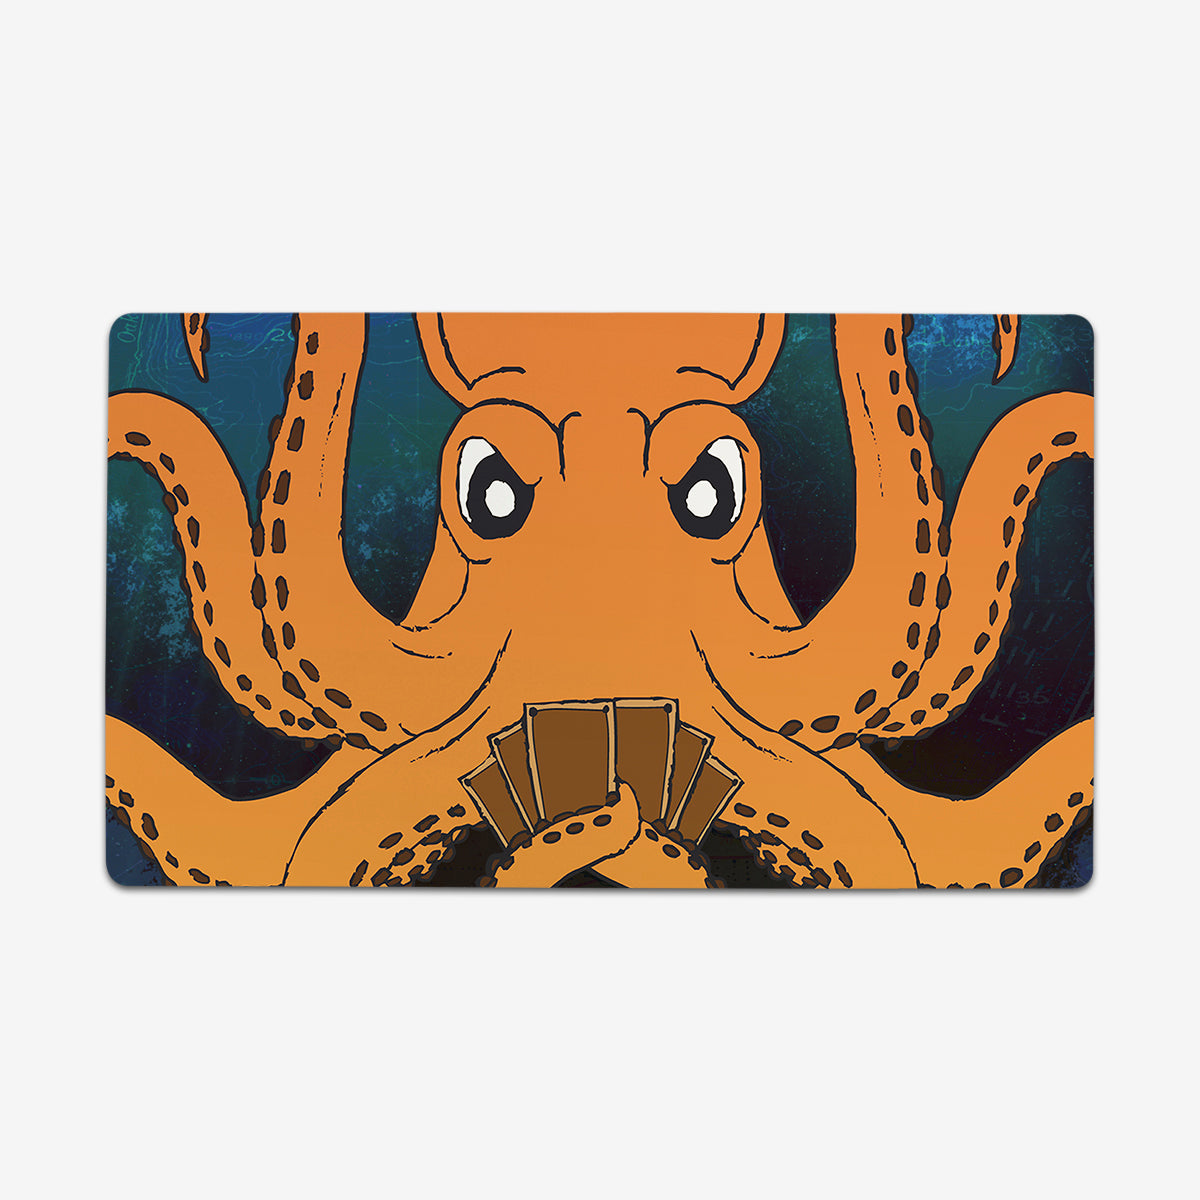 Tapis de souris rond Monster avec bord cousu, caoutchouc antidérapant,  Octopus Kraken, Monster Ocean Art, Gaming Moudescriptif, Fit Office Work